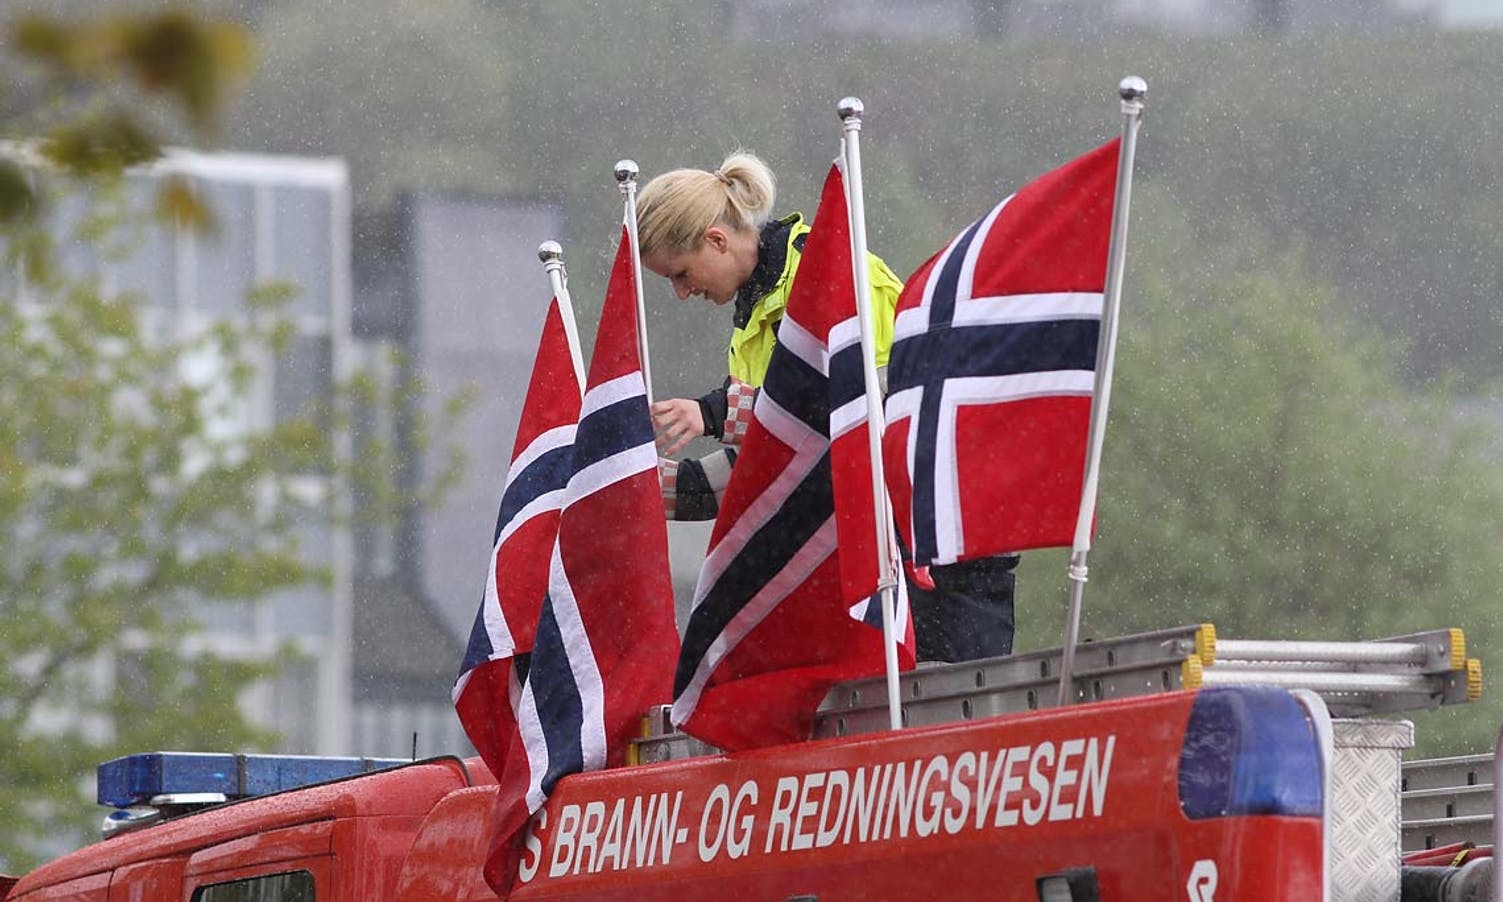 Brannvesenet stilt med eigen tribune pynta med norske flagg (foto: AH)